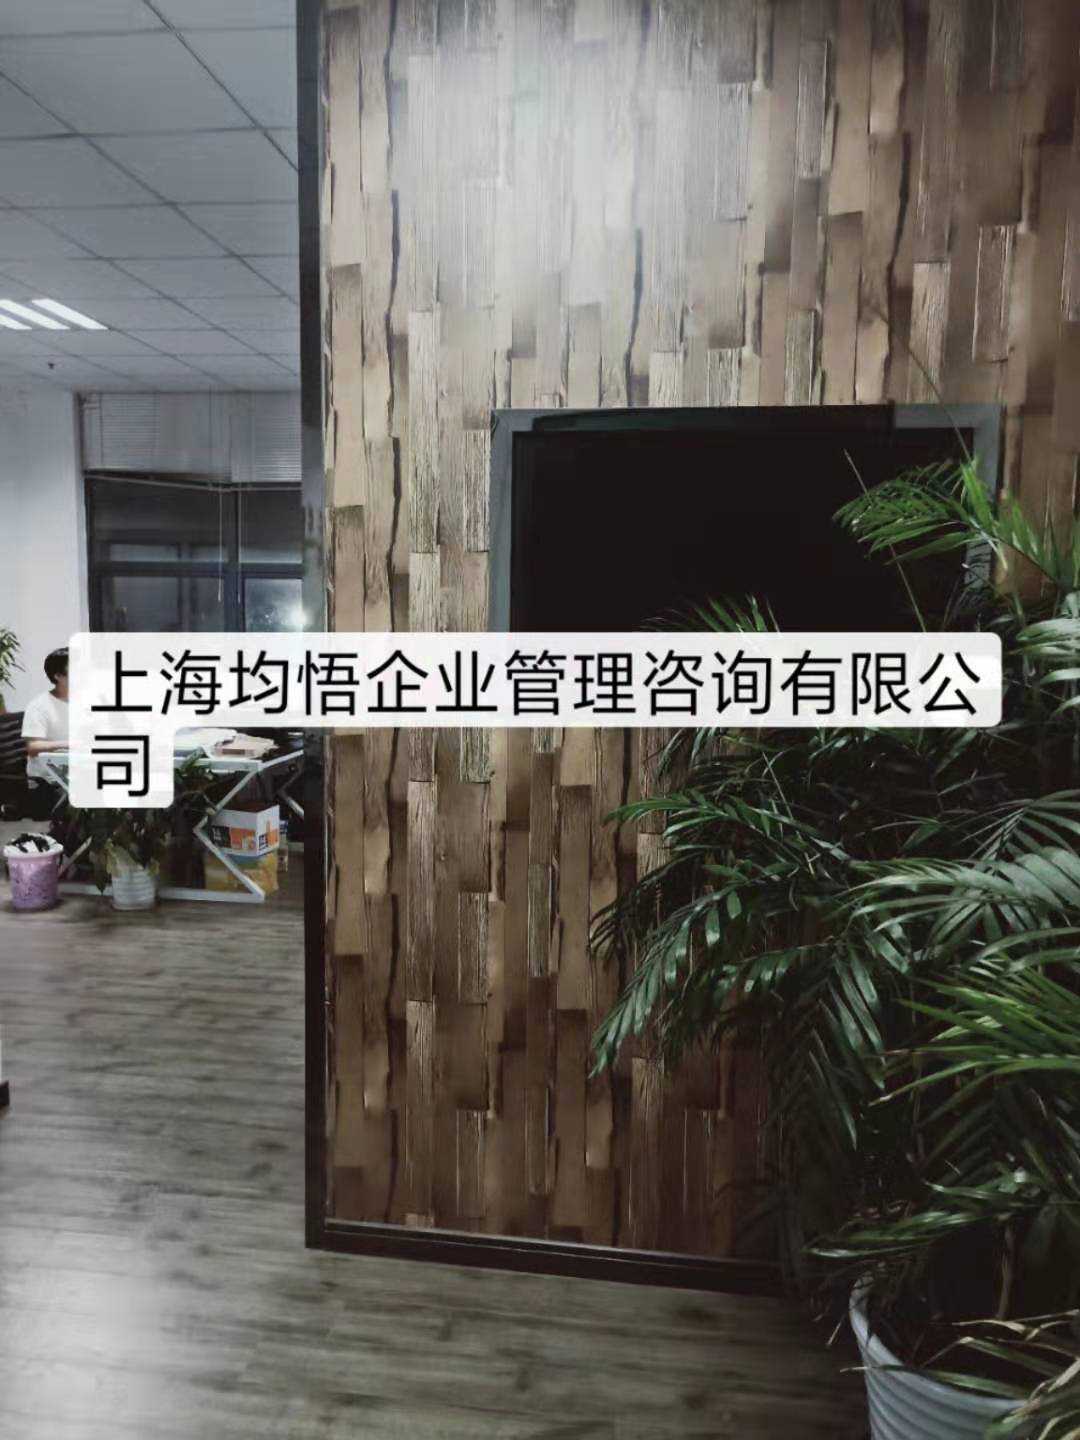 上海闵行区食品冷冻冷藏经营许可证办理流程